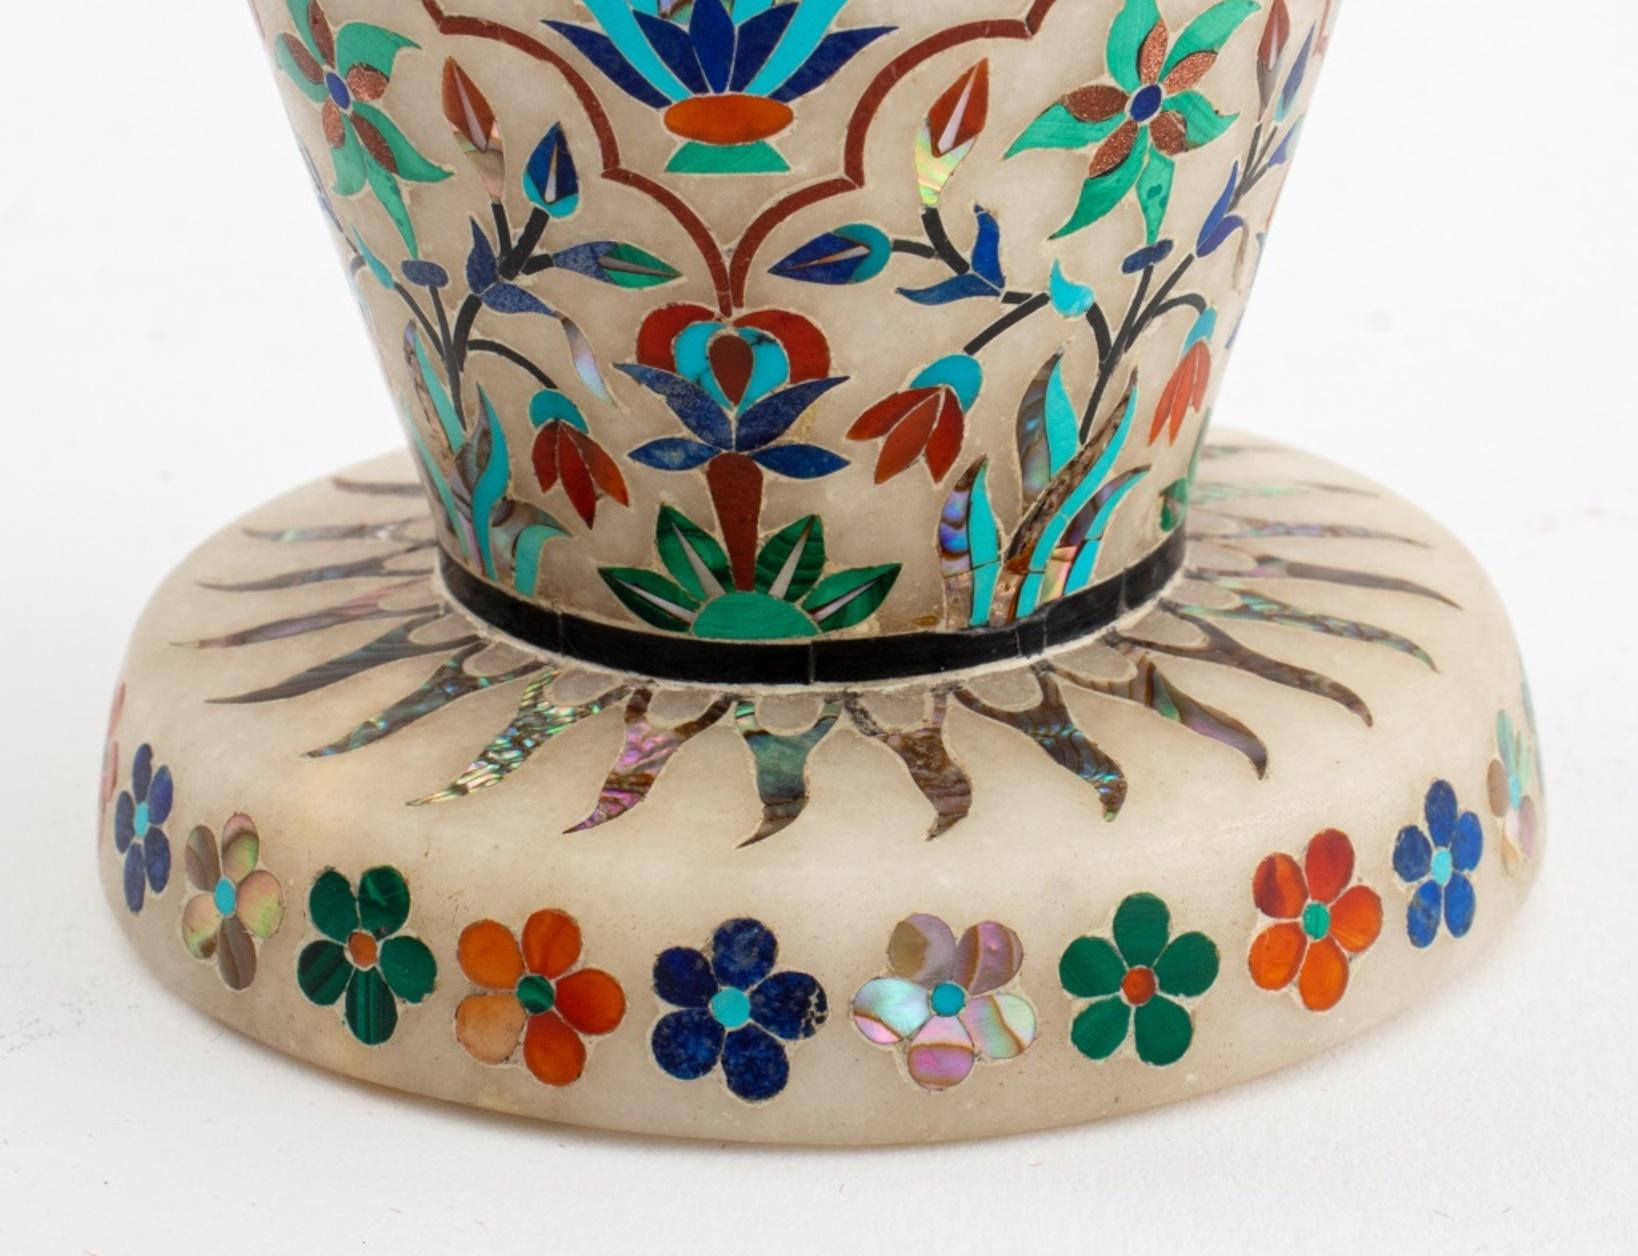 Vase / urne indien en albâtre avec des pierres semi-précieuses incrustées dans un motif de fleurs et de feuillages, comprenant : malachite, turquoise, lapis-lazuli, nacre et autres, non marqué.

Dimensions : 7